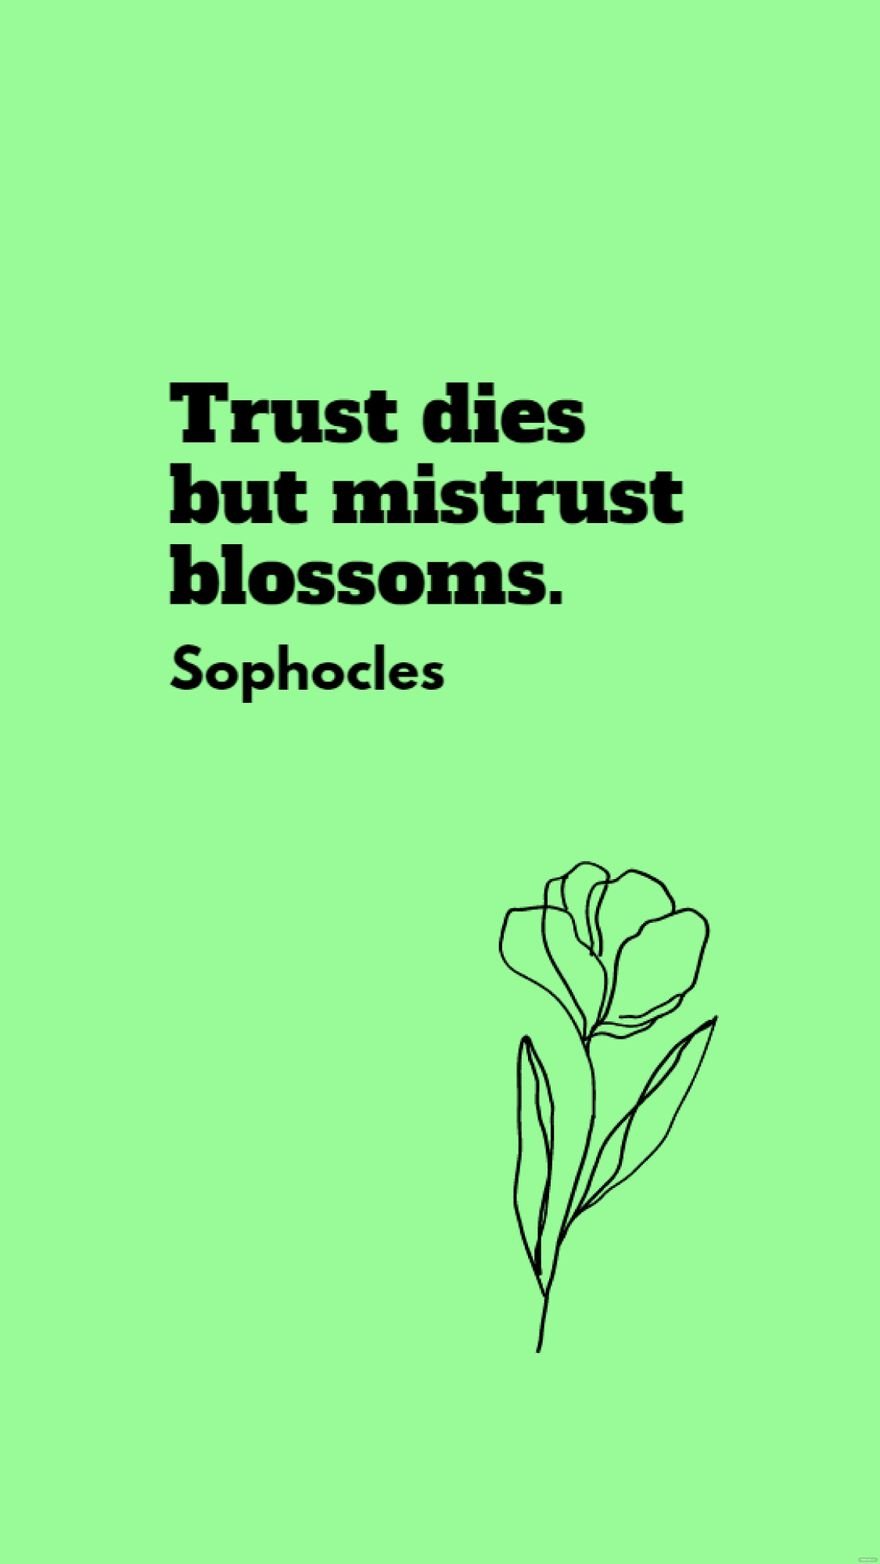 Sophocles - Trust dies but mistrust blossoms.